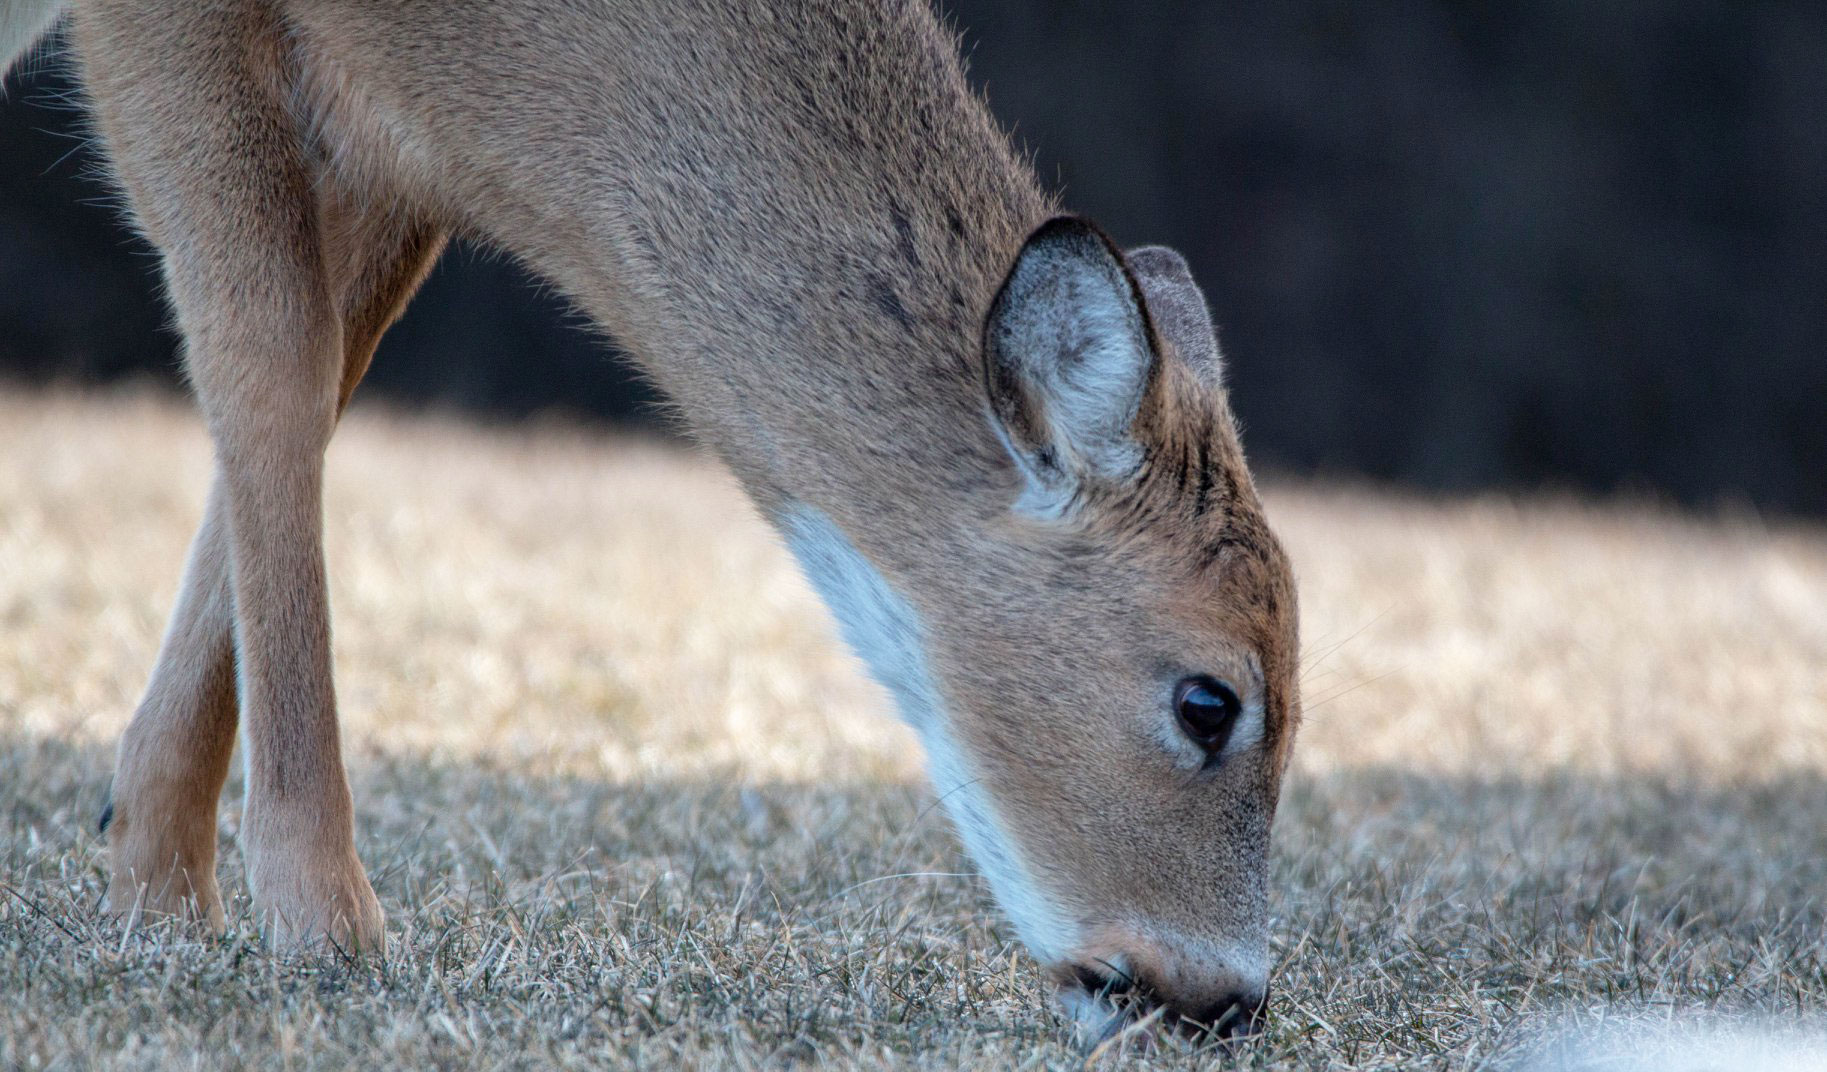 A deer eating grass.